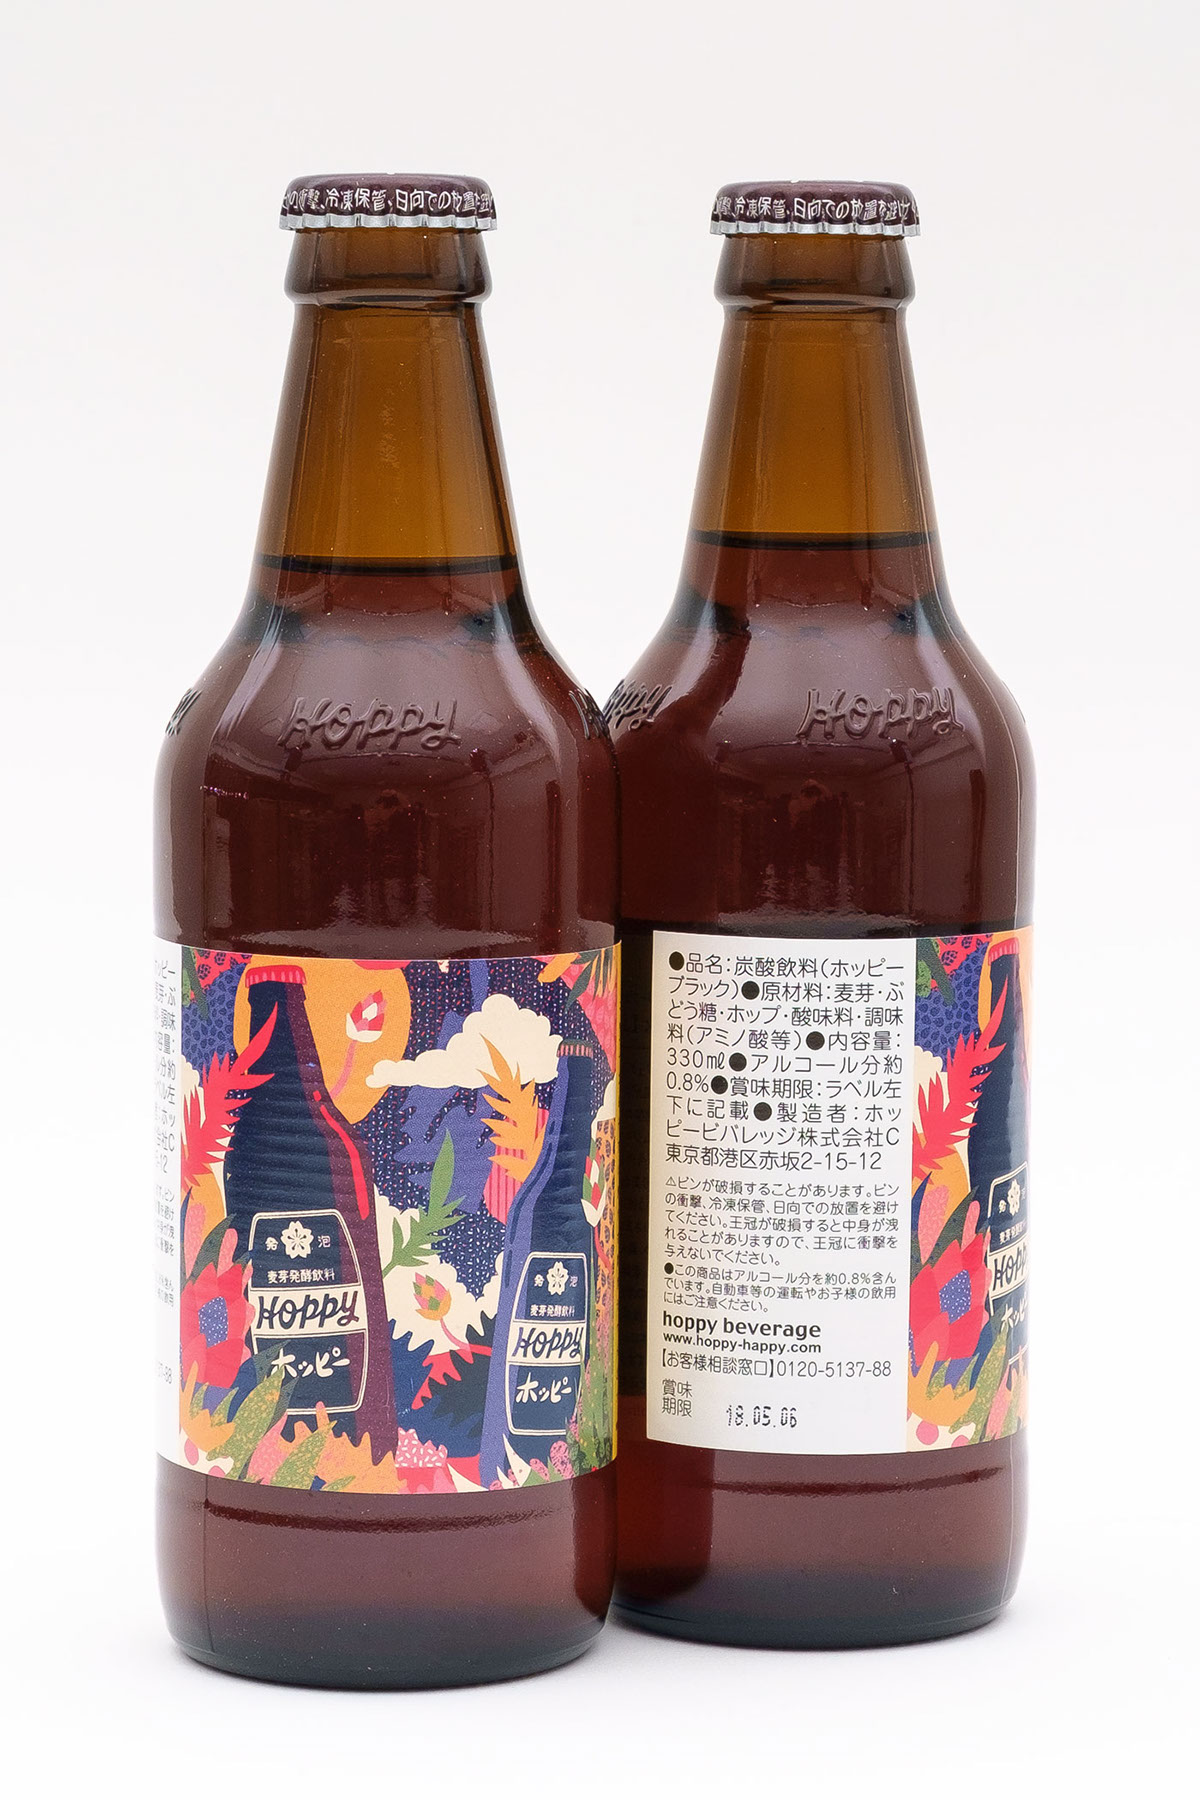 beer beverage hops shochu alcohol poster Hoppy japan tokyo bottle